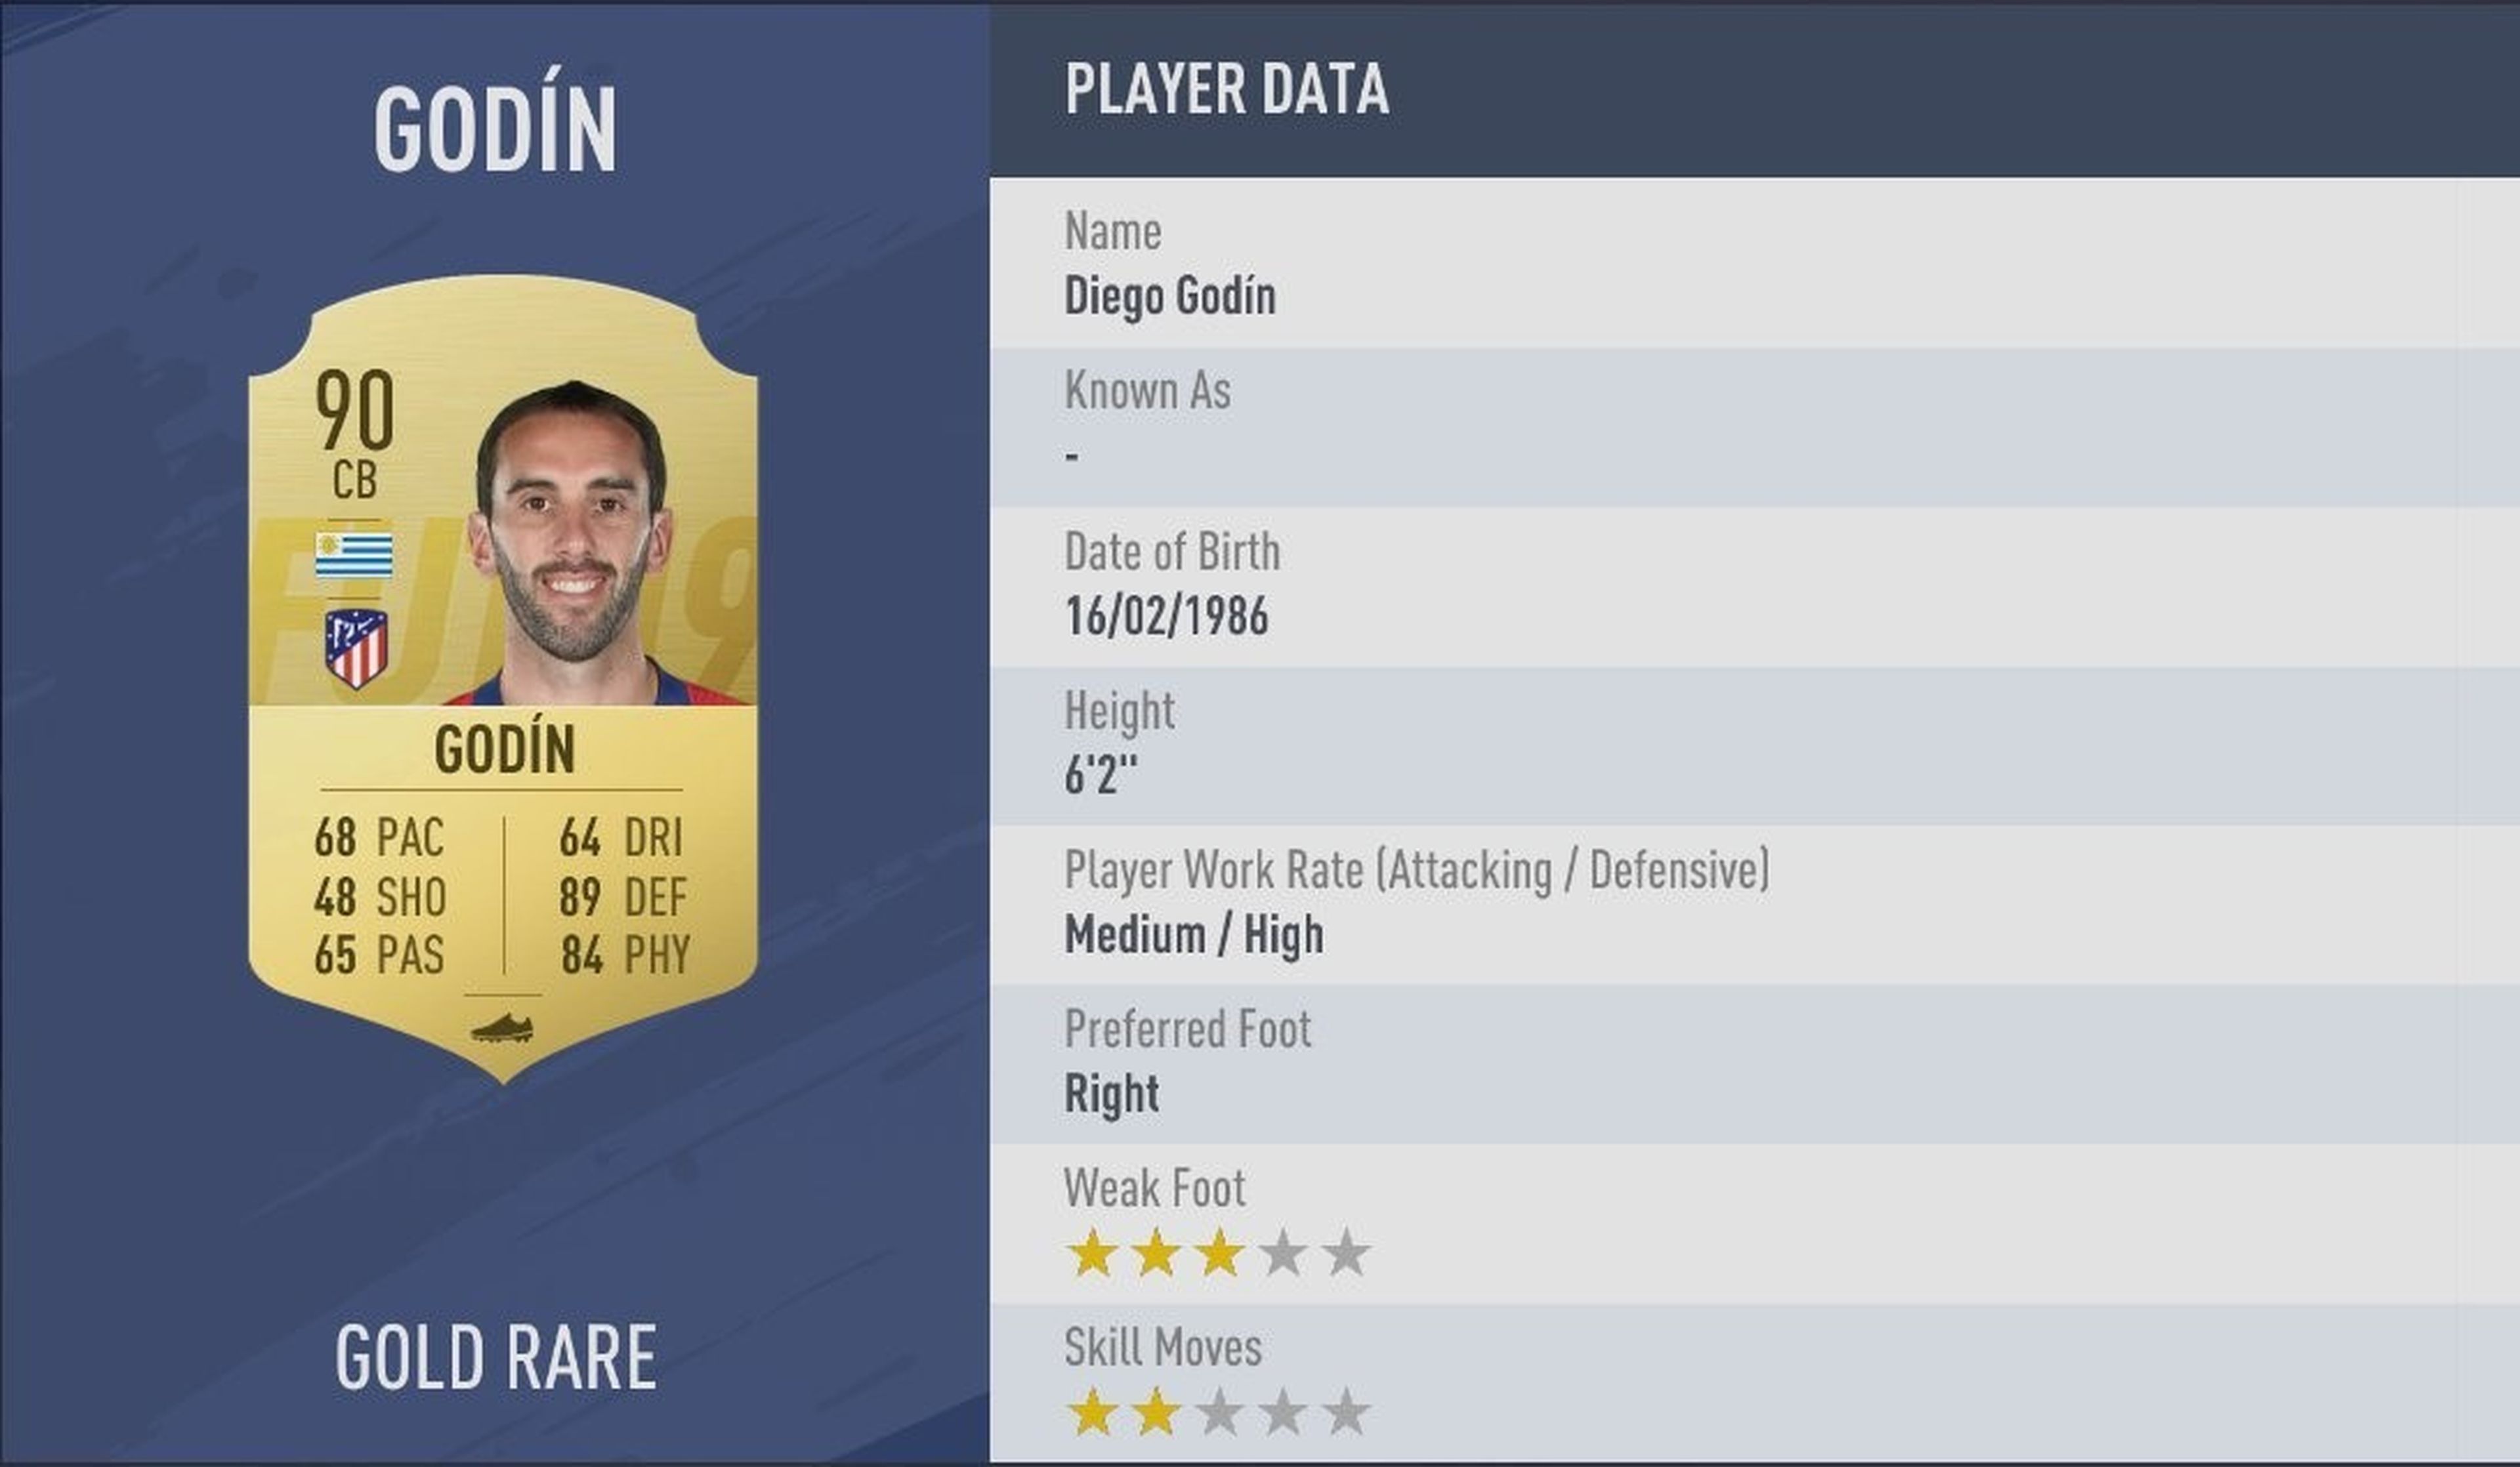 FIFA 19 - Diego Godín